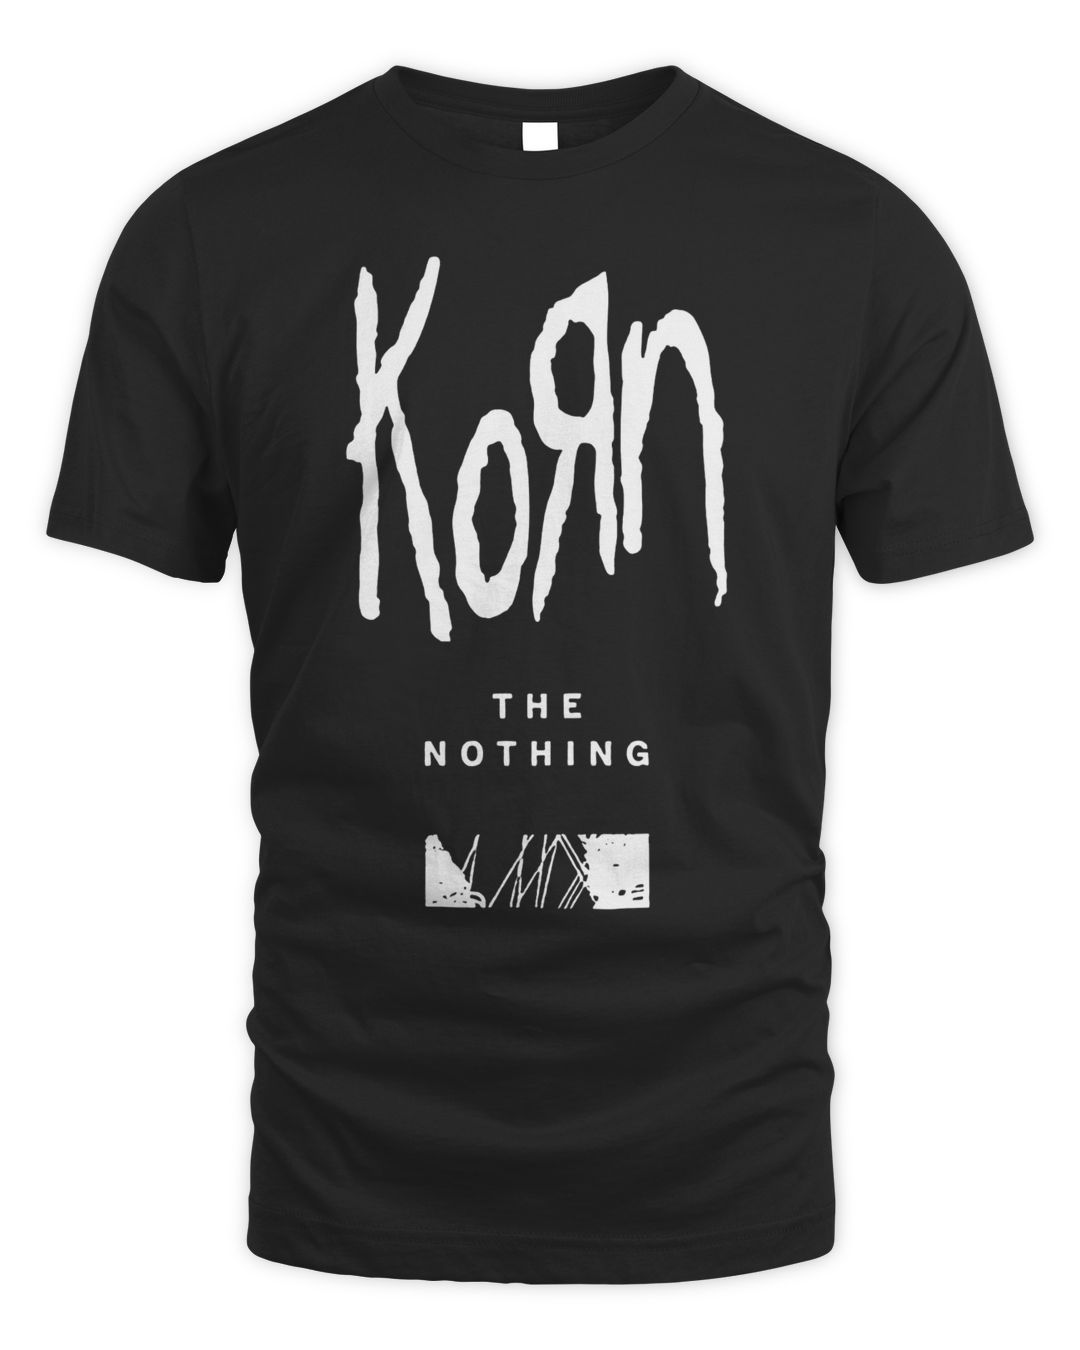 Korn Merch Logo Wires Shirt